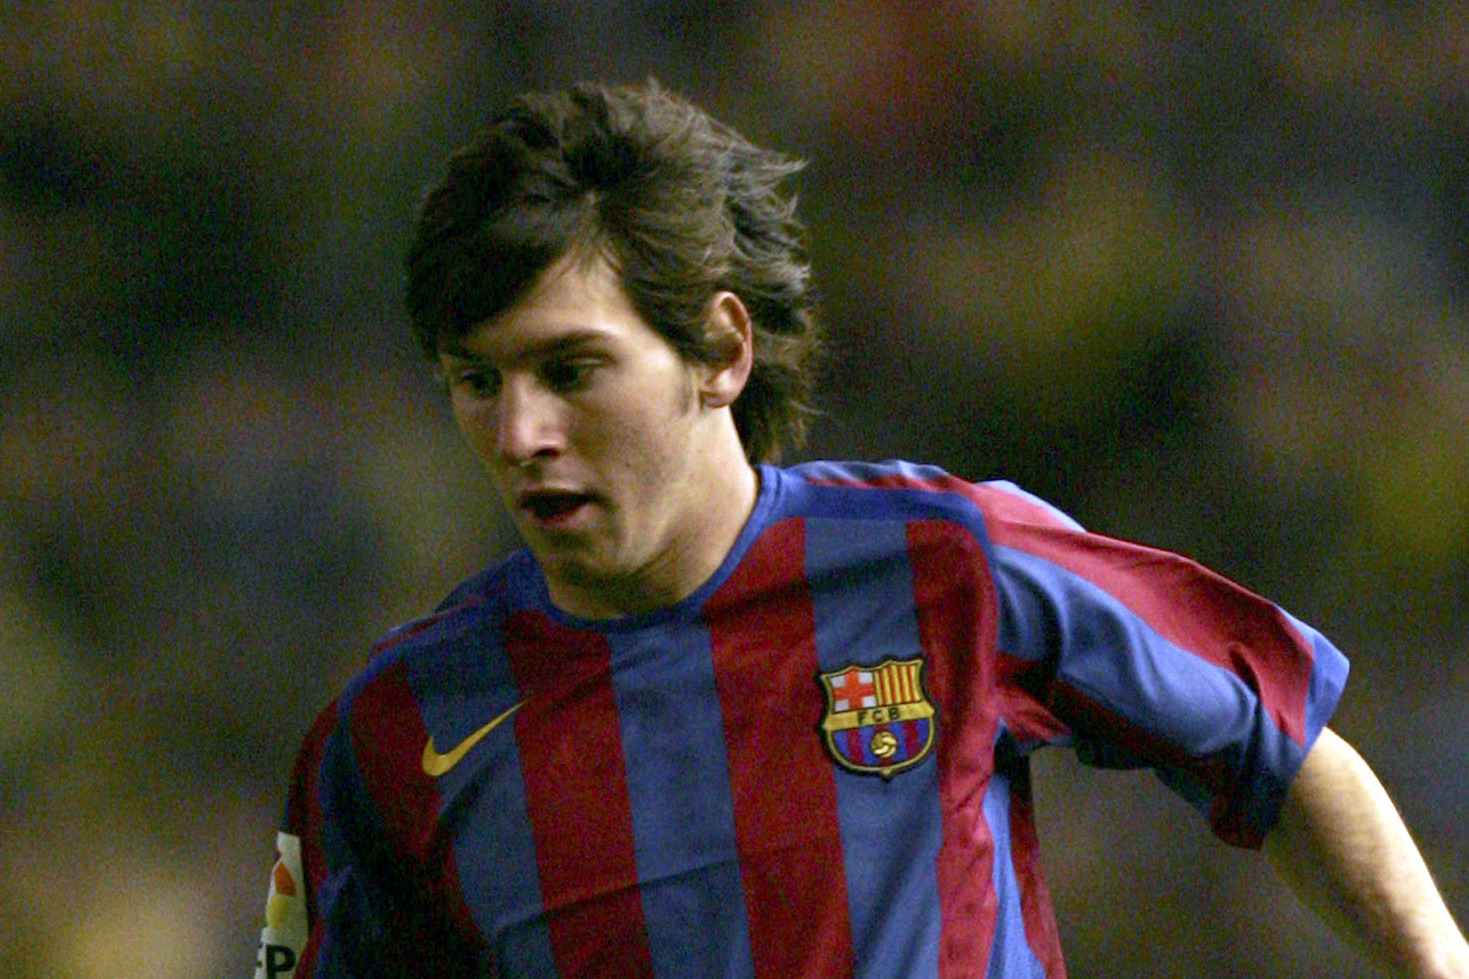 El Barcelona Revela Un Video Inédito De Messi A Los 16 Años Astrolabio